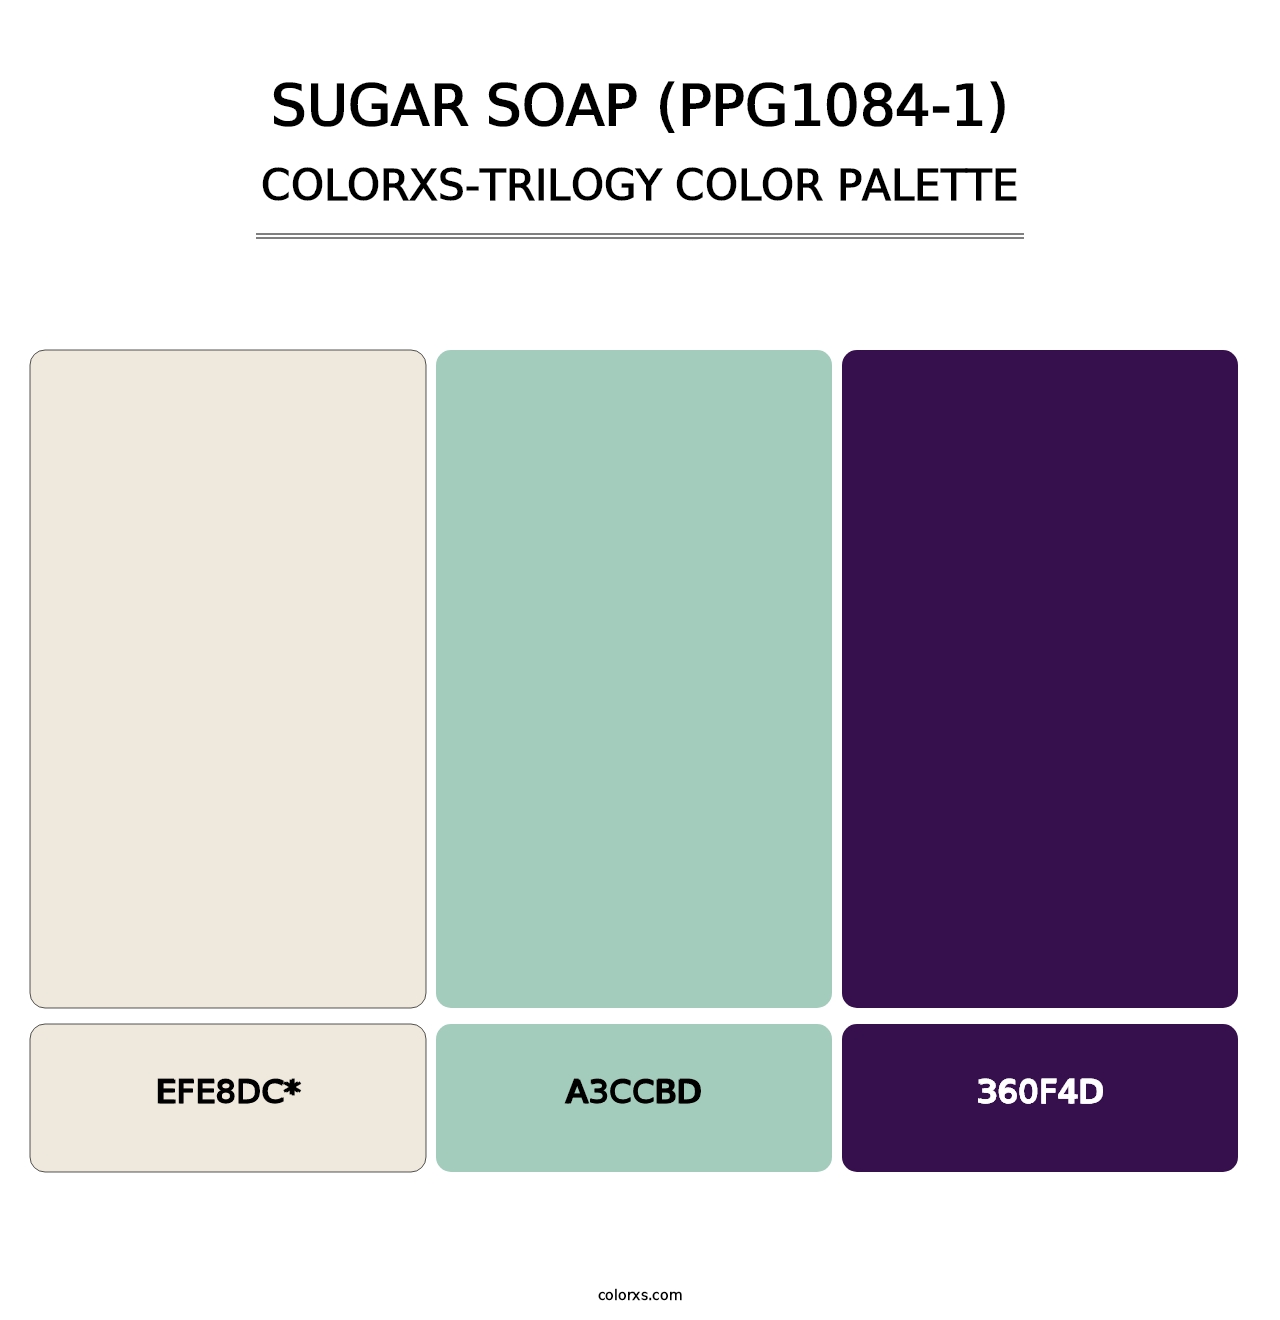 Sugar Soap (PPG1084-1) - Colorxs Trilogy Palette